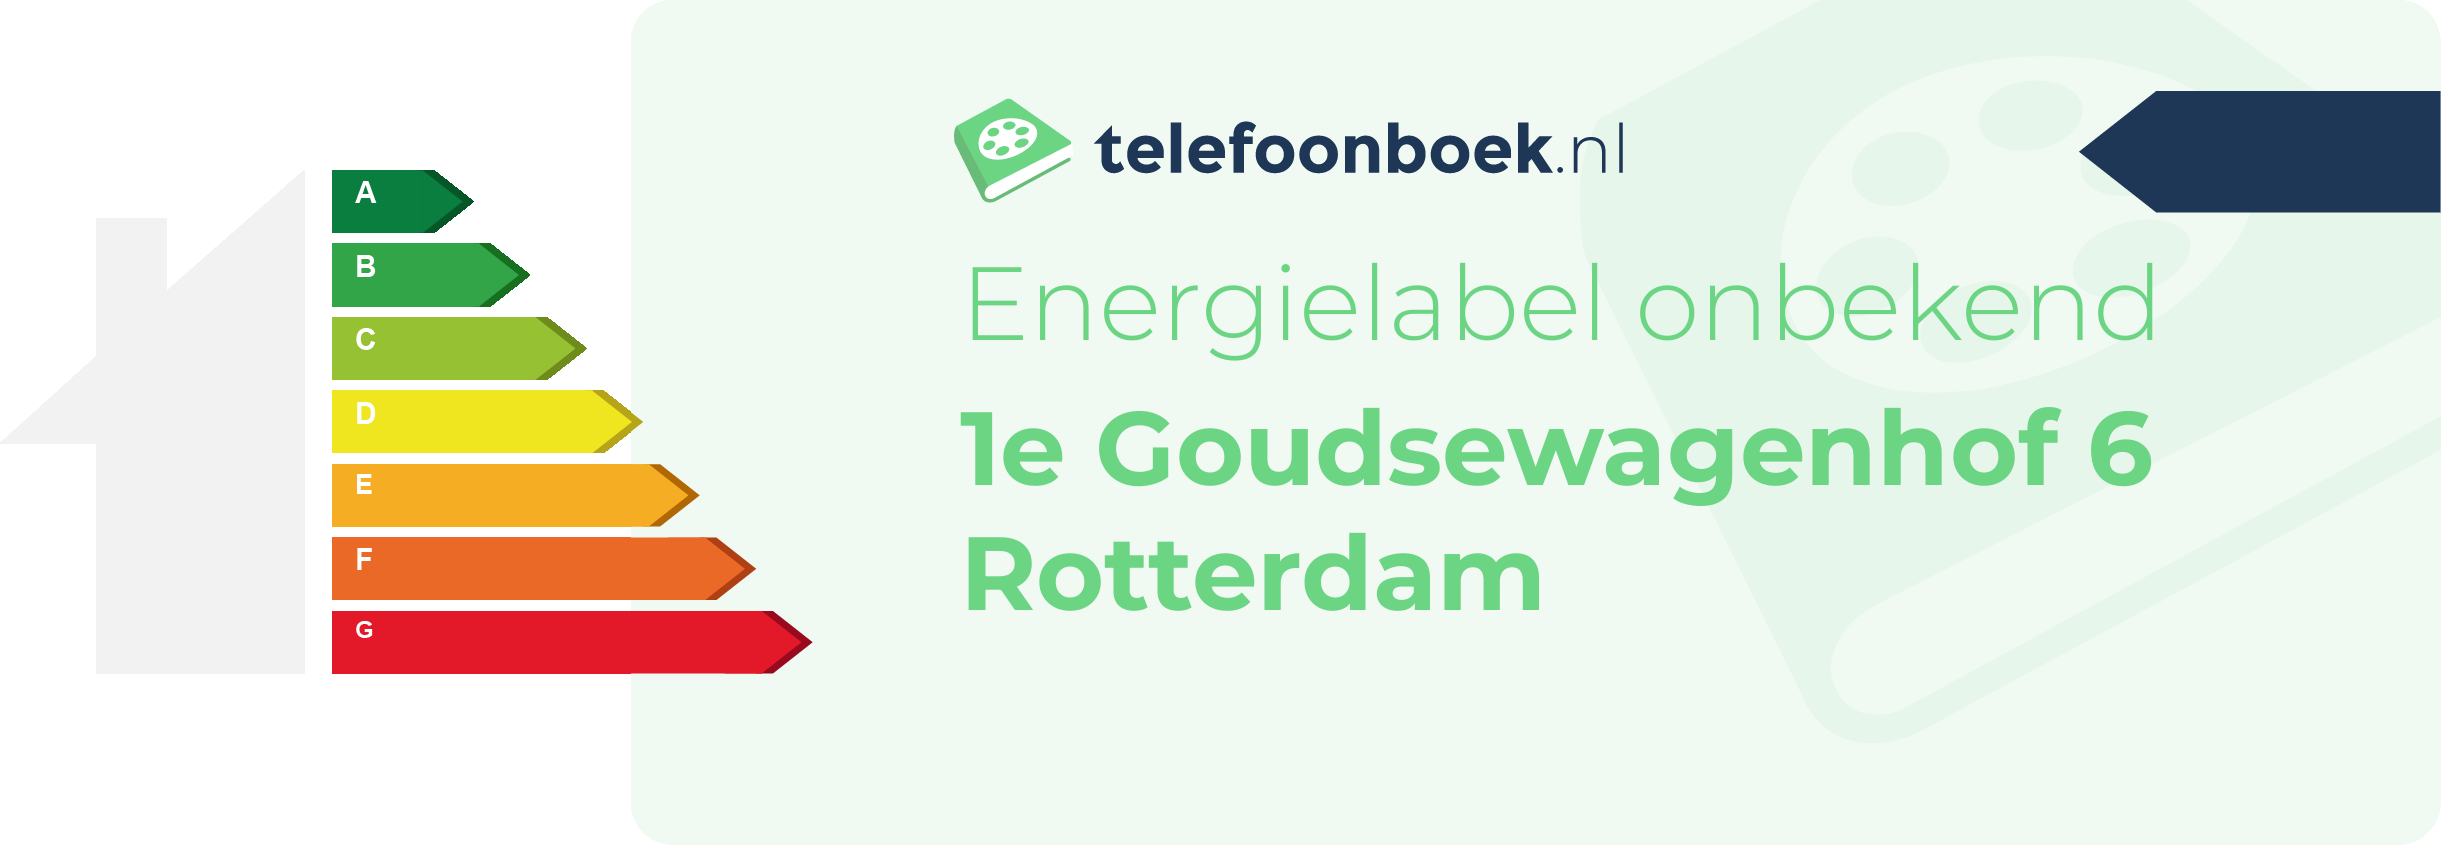 Energielabel 1e Goudsewagenhof 6 Rotterdam